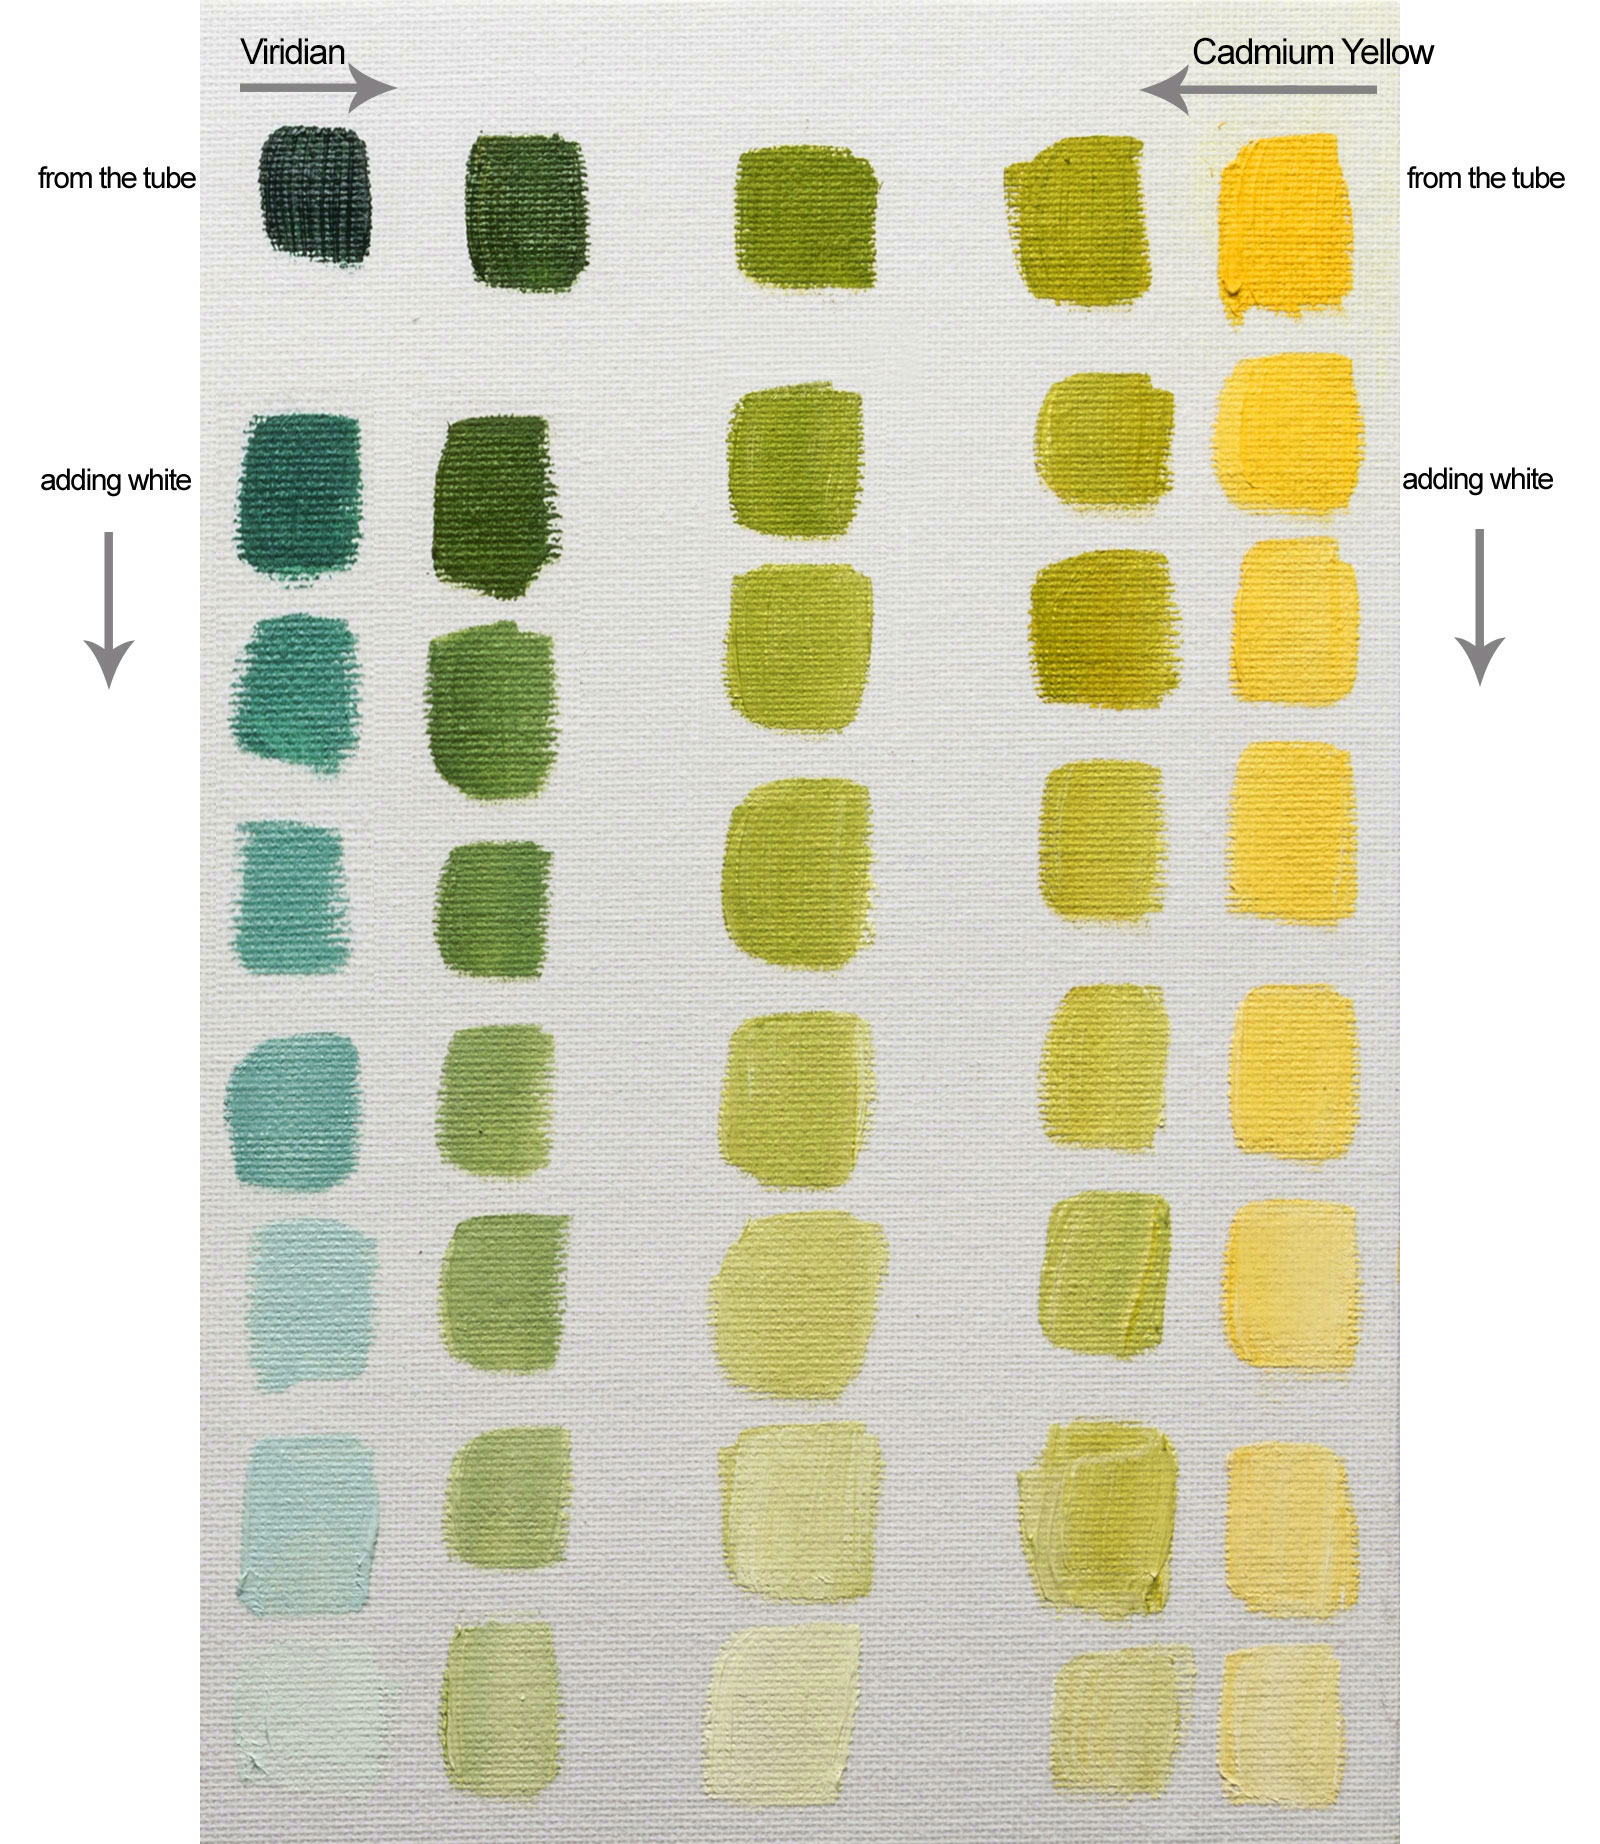 Williamsburg Oil Color Chart